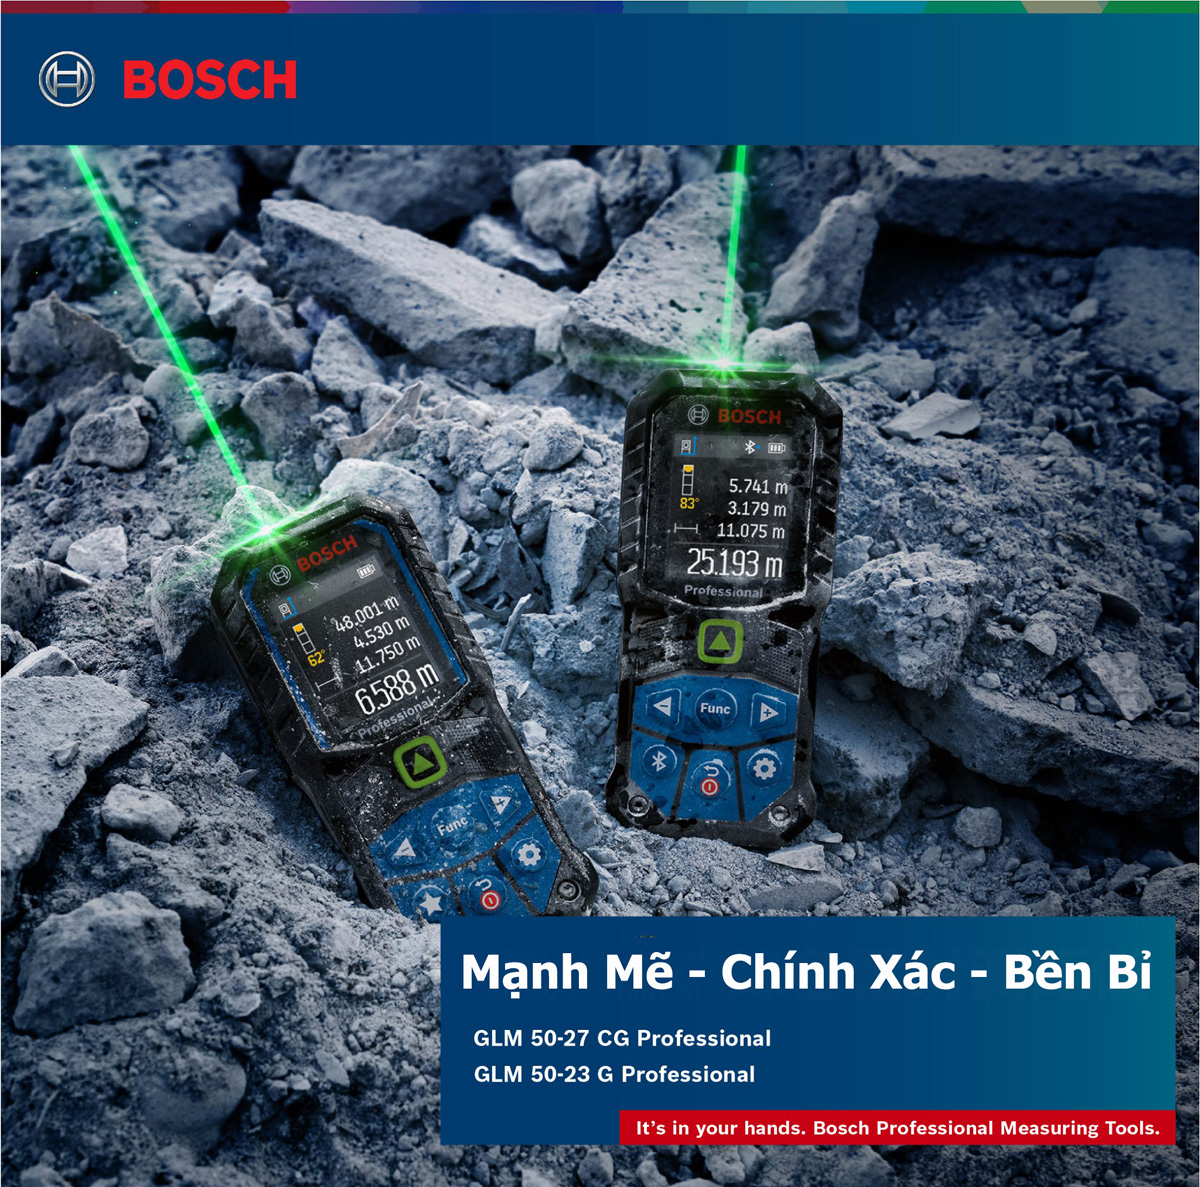 Máy đo khoảng cách tia laser xanh Bosch mạnh mẽ hiệu quả trong mọi điều kiện